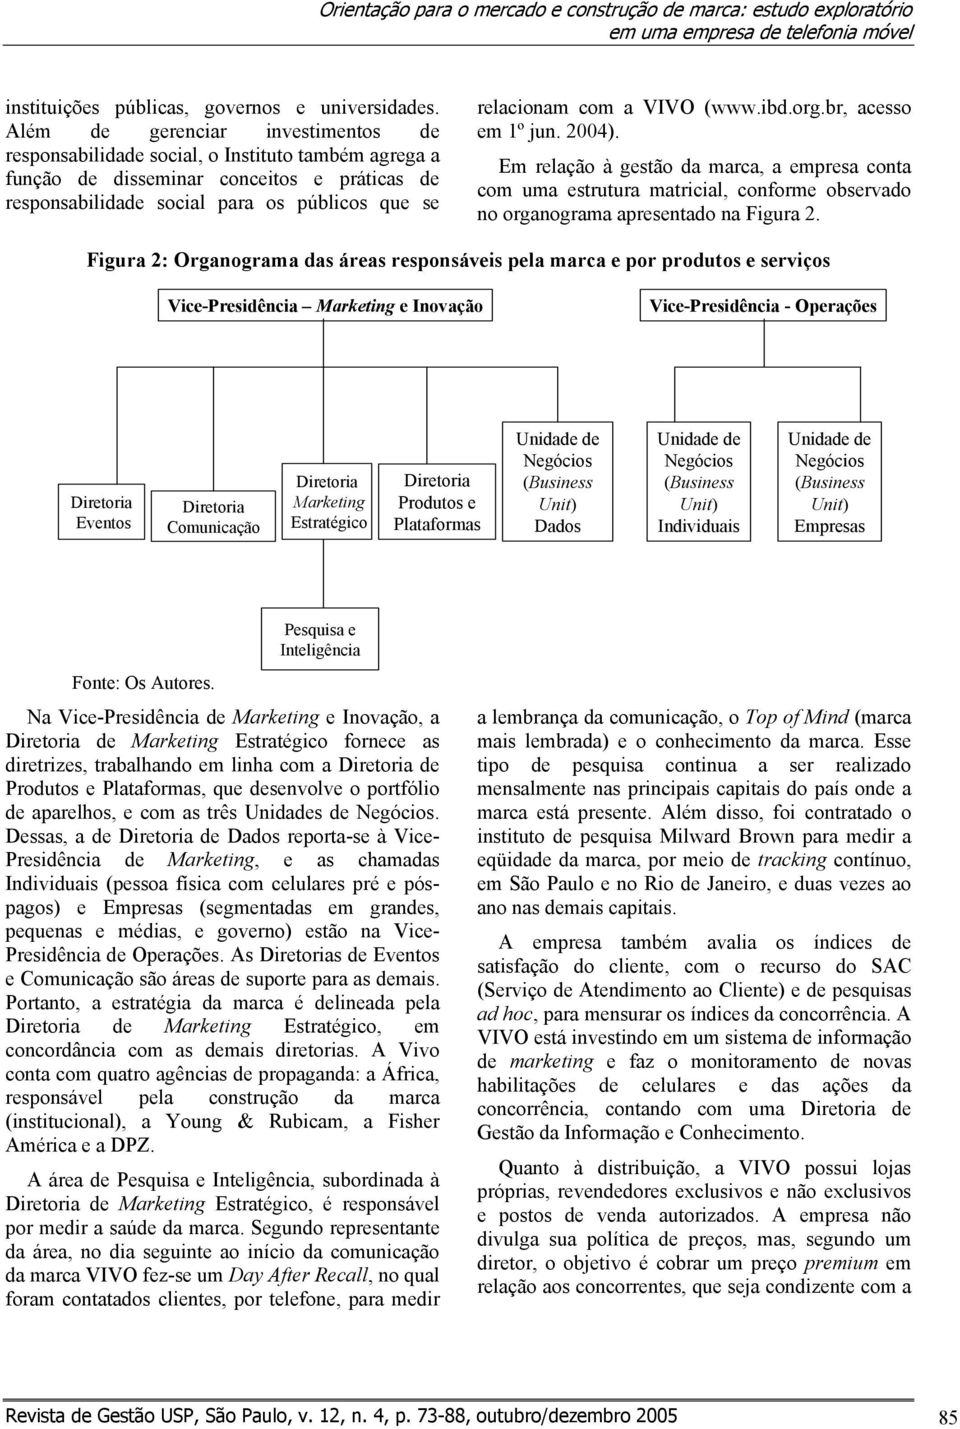 VIVO (www.ibd.org.br, acesso em 1º jun. 2004). Em relação à gestão da marca, a empresa conta com uma estrutura matricial, conforme observado no organograma apresentado na Figura 2.